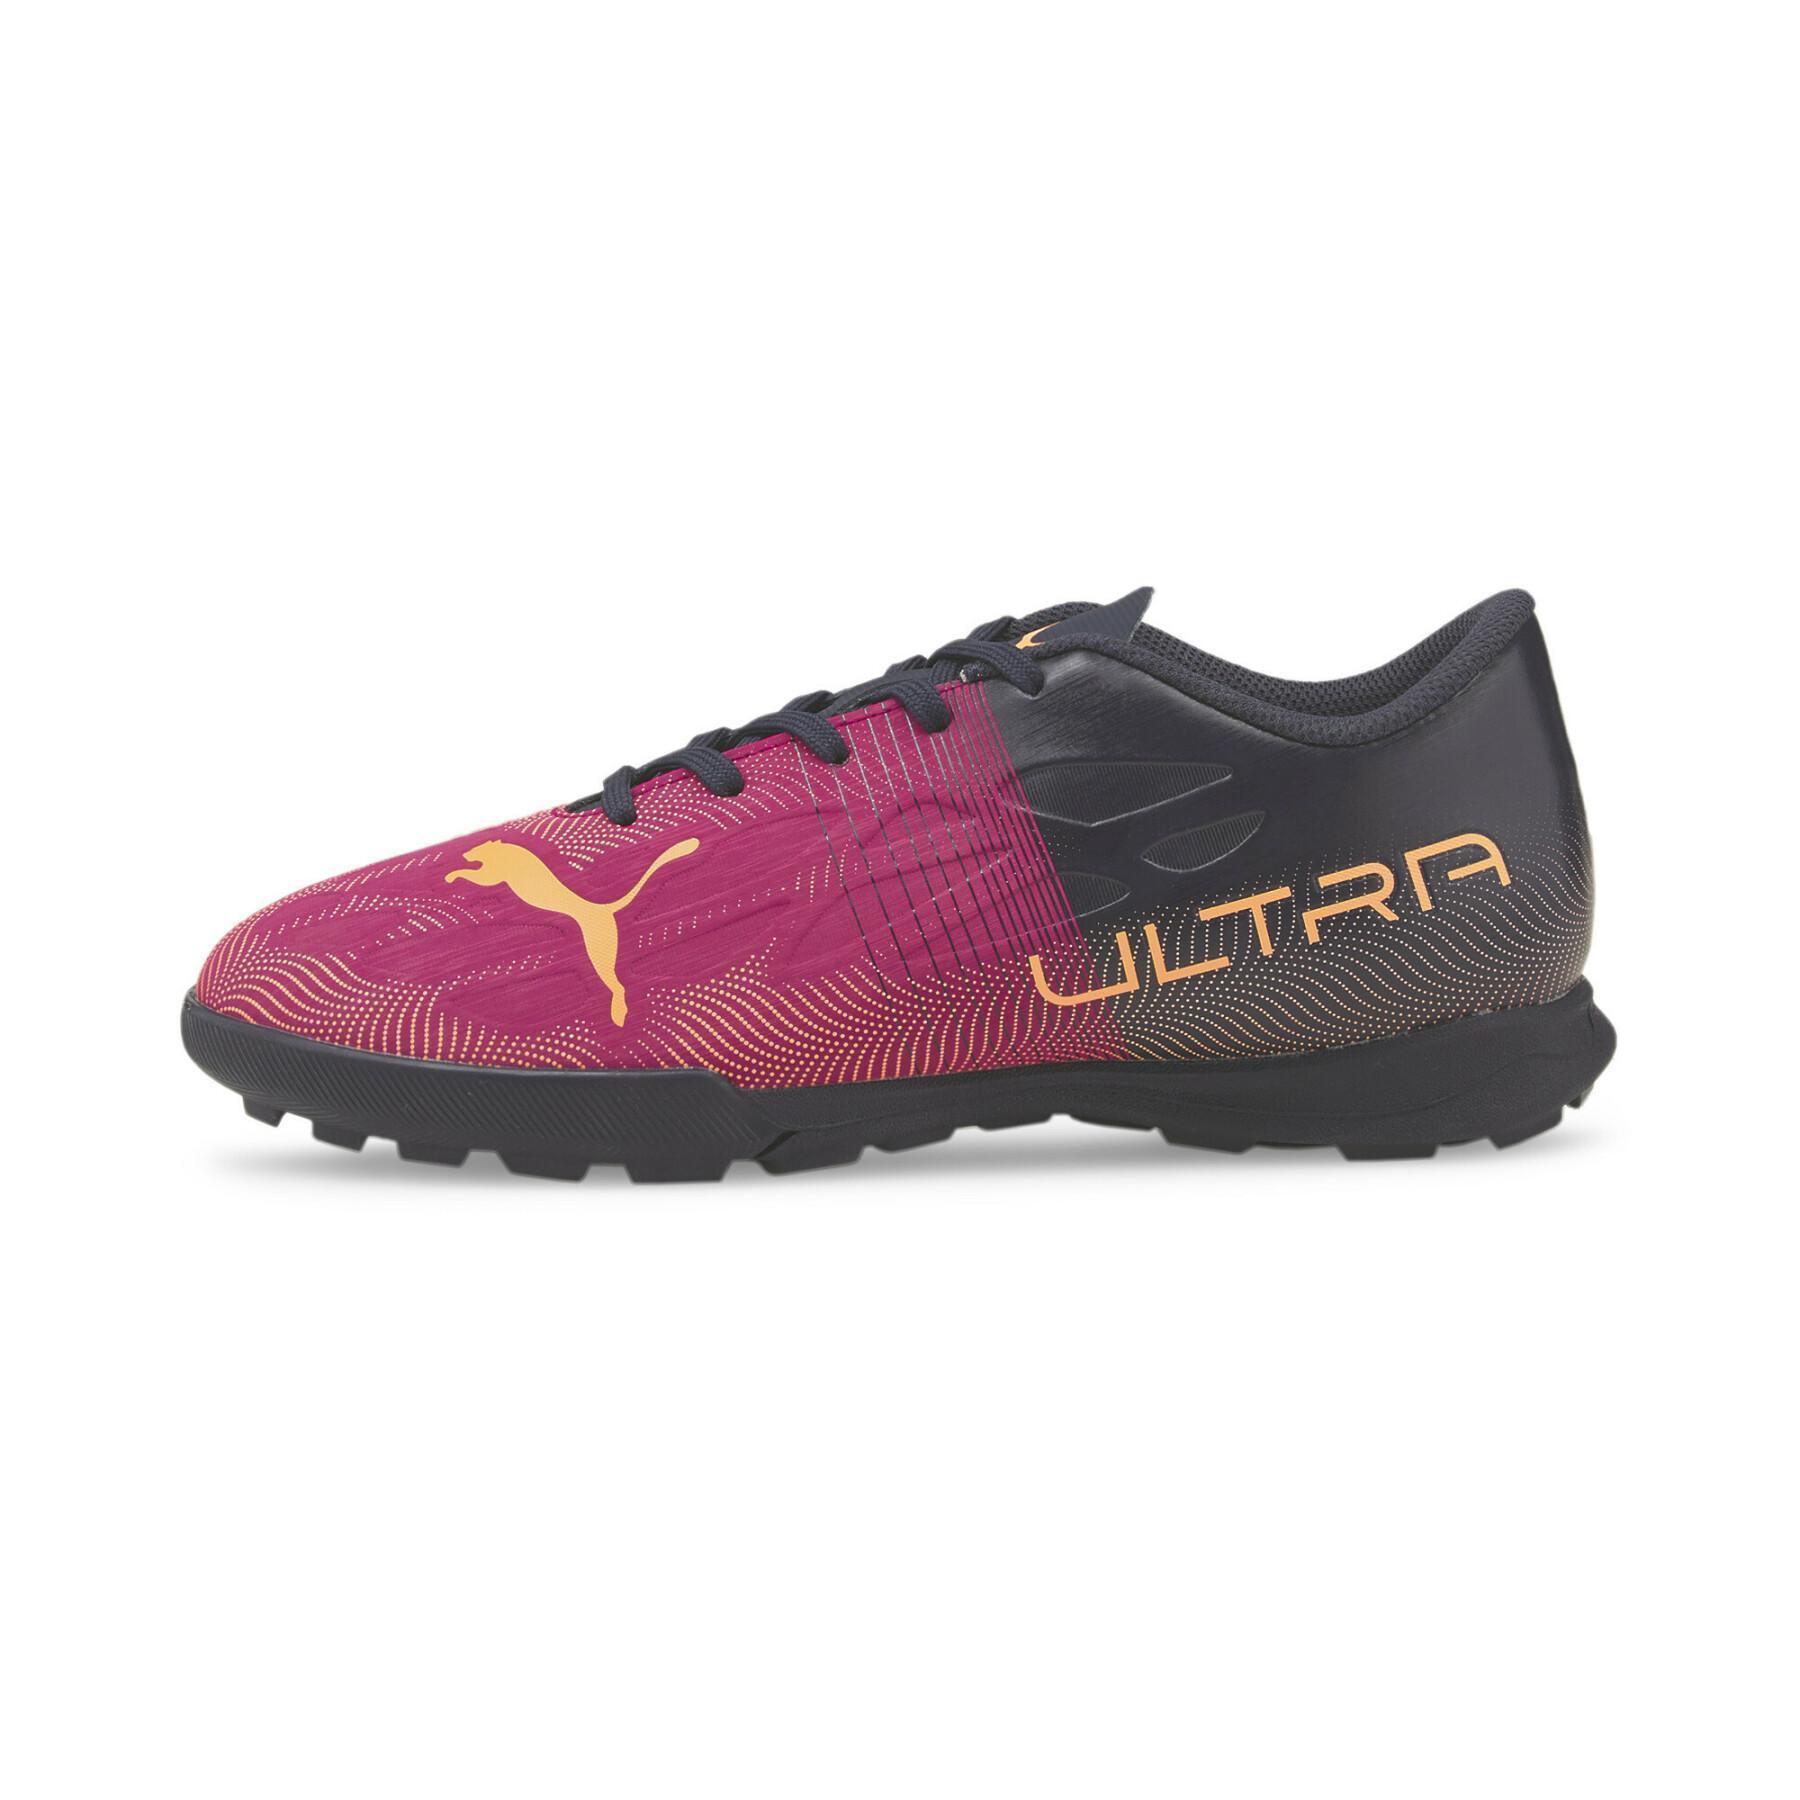 Sapatos de futebol para crianças Puma Ultra 4.4 TT